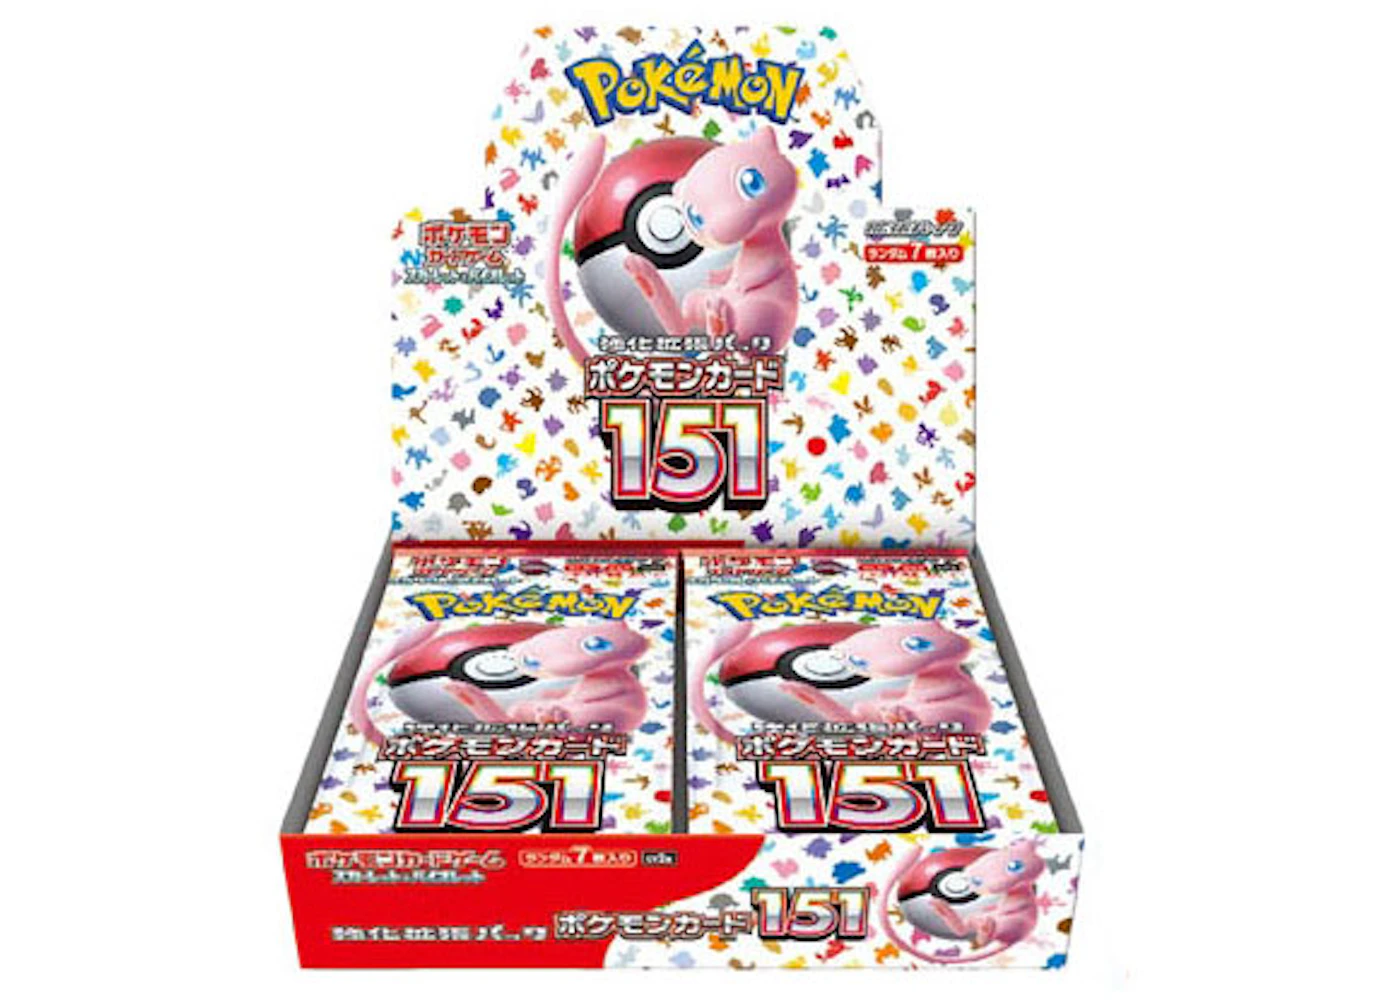 Pokémon TCG Scarlet & Violet 151 Enhanced Expansion Pack (Japanese) - US